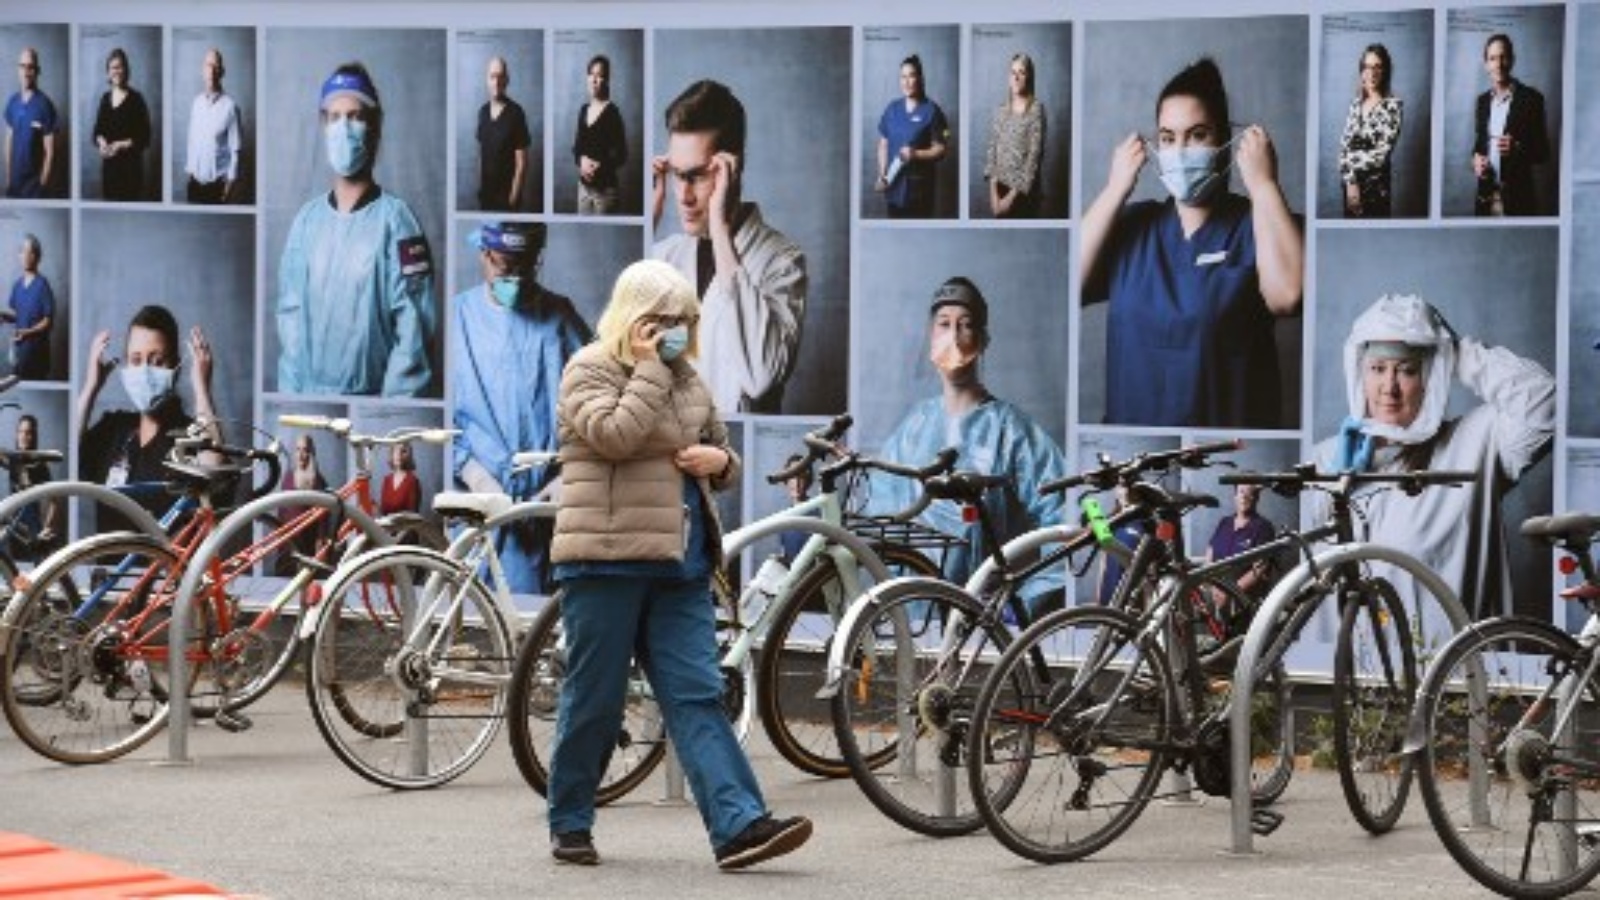 امرأة تمر أمام عرض للصور خارج مستشفى ملبورن الملكي في 20 أكتوبر 2020 ، لشكر العاملين في مجال الرعاية الصحية حيث تسجل ولاية فيكتوريا حالة إصابة جديدة بفيروس كورونا COVID-19.